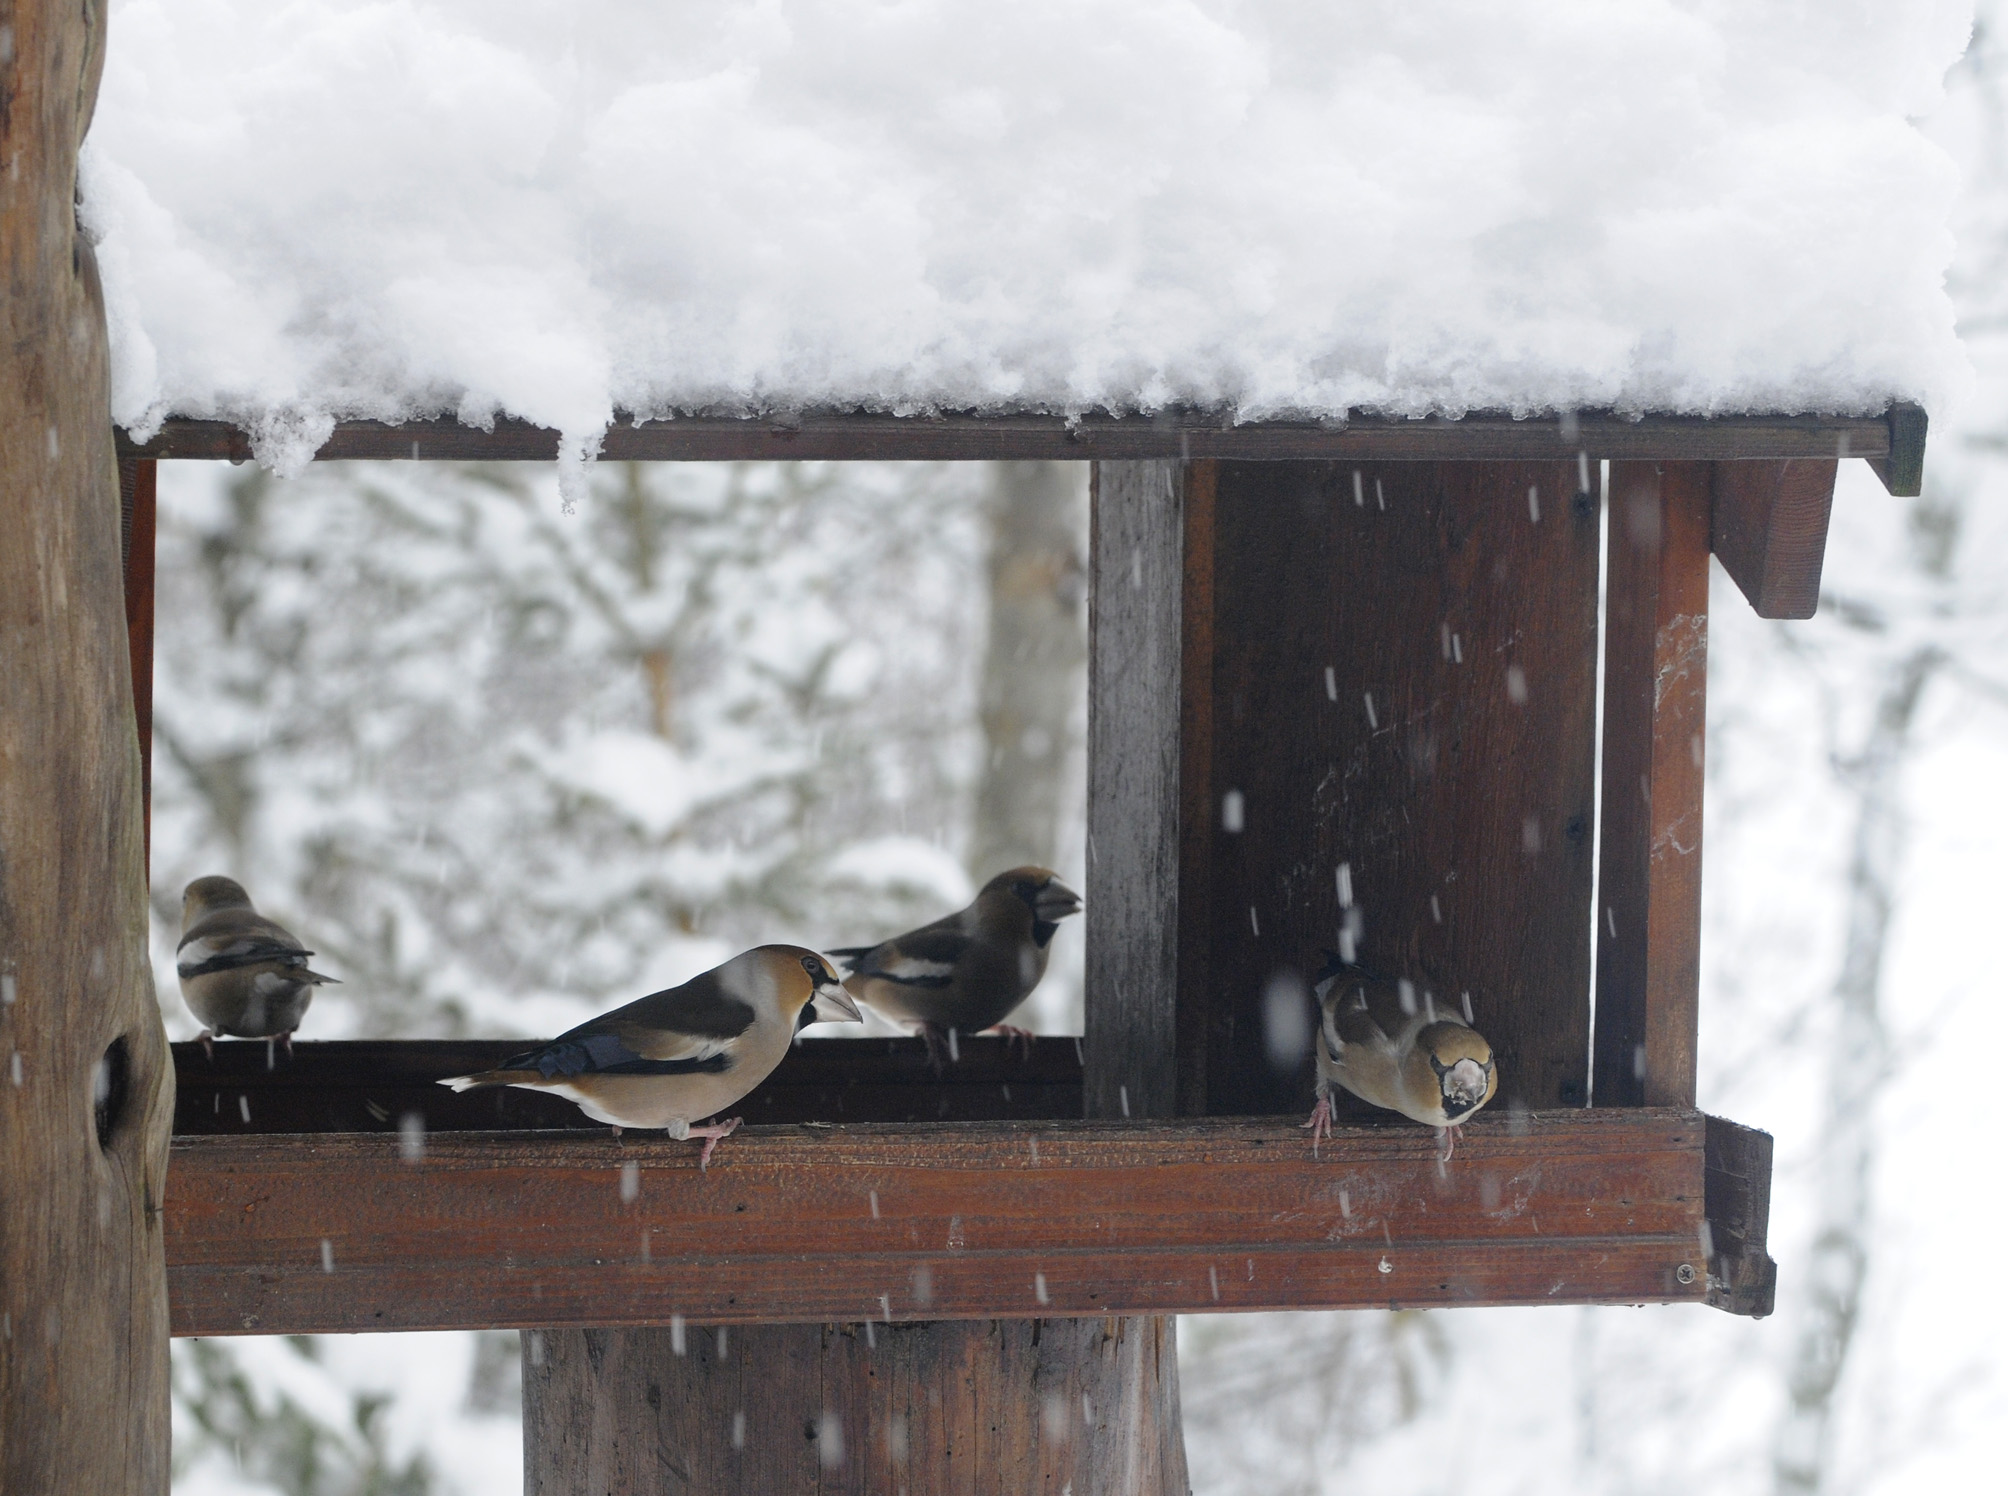 Fôringsbrett bør ha tak over for å beskytte maten mot regn og snø. Åpningene på sidene må være så store, som her, at fuglene har god utsikt og kan oppdage eventuelle fiender. Fuglene på brettet er kjernebitere.